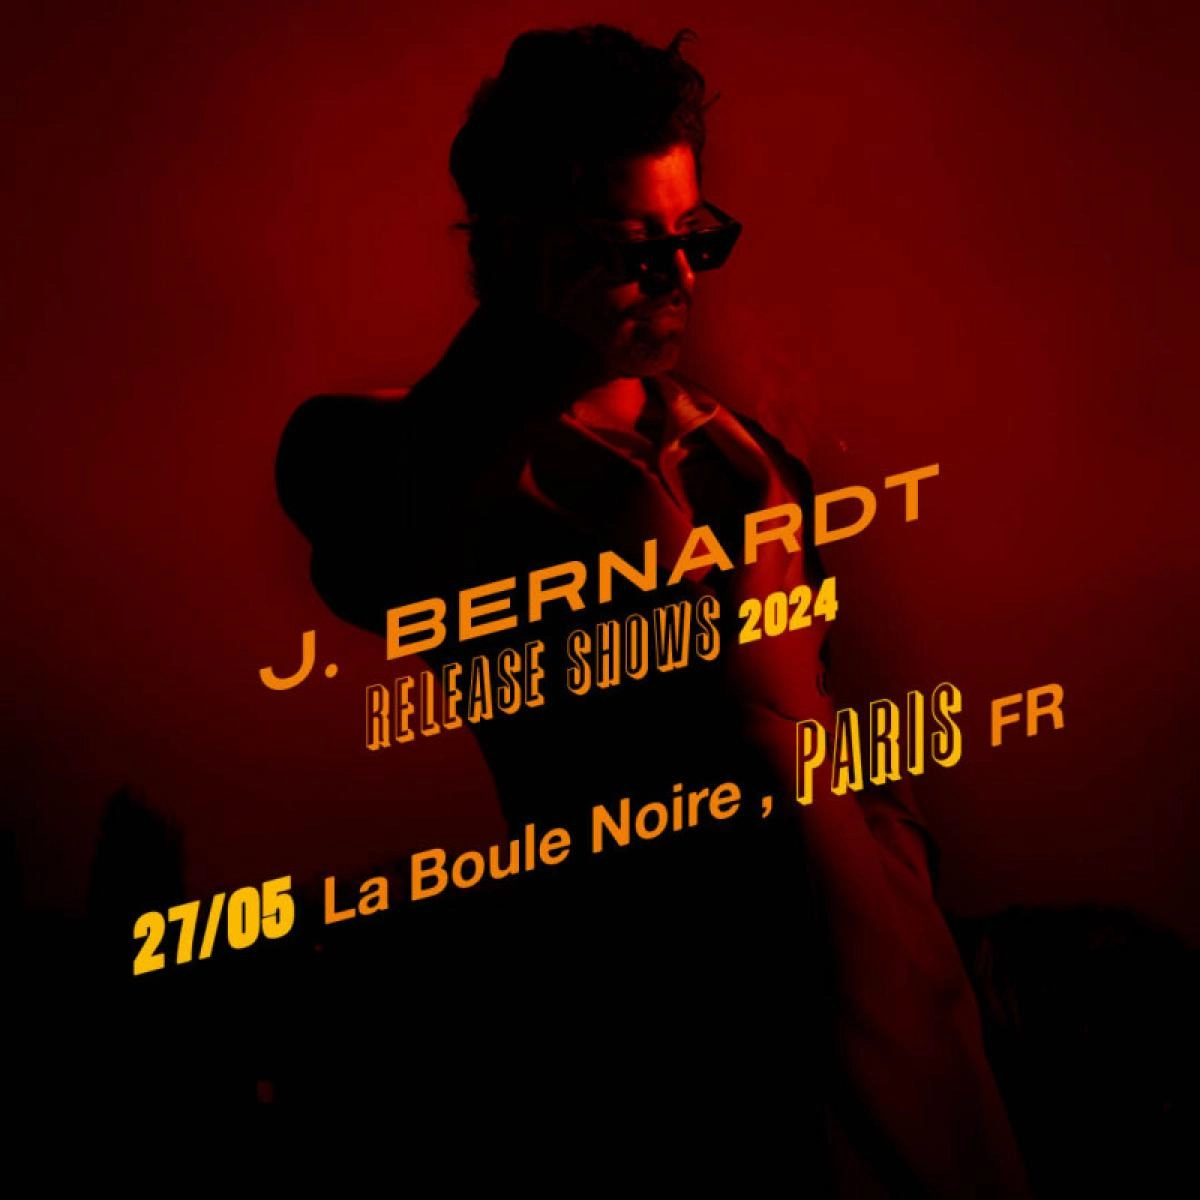 J. Bernardt at La Boule Noire Tickets